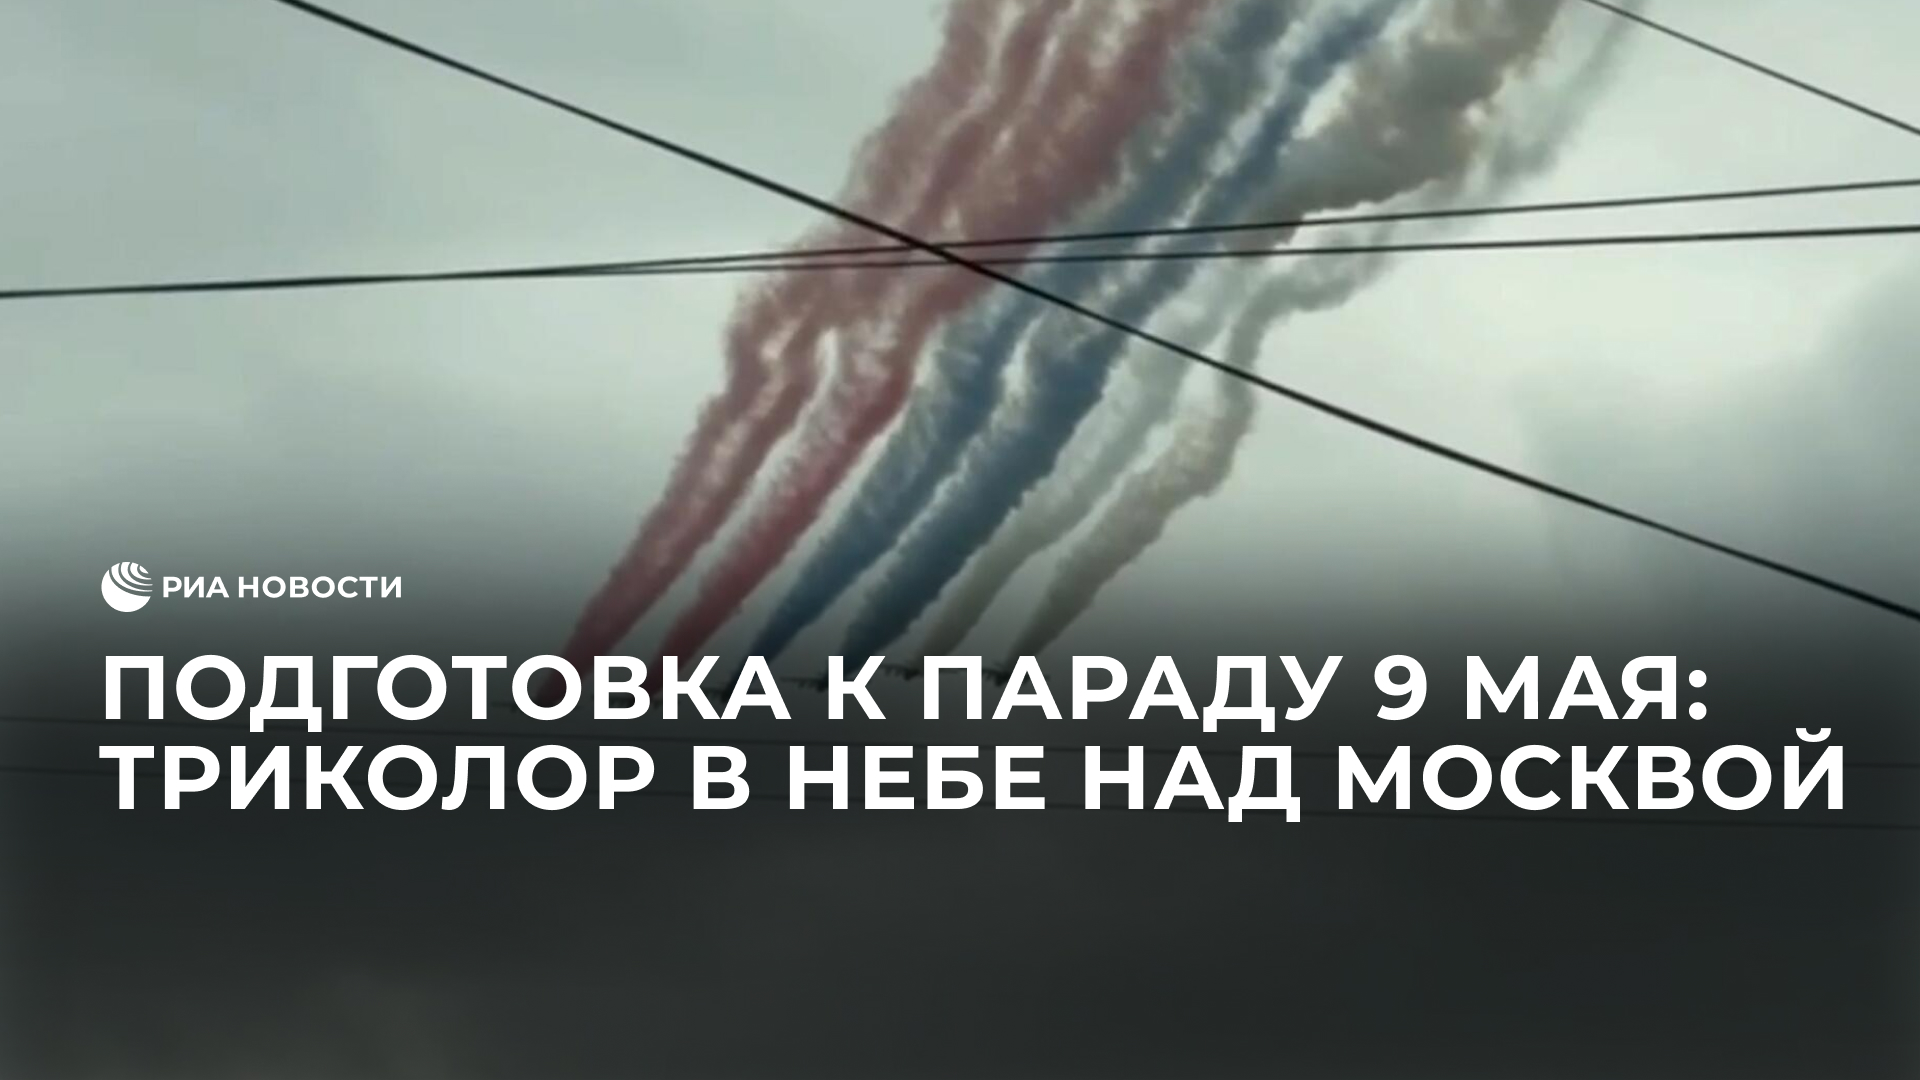 Подготовка к параду 9 мая: триколор в небе над Москвой